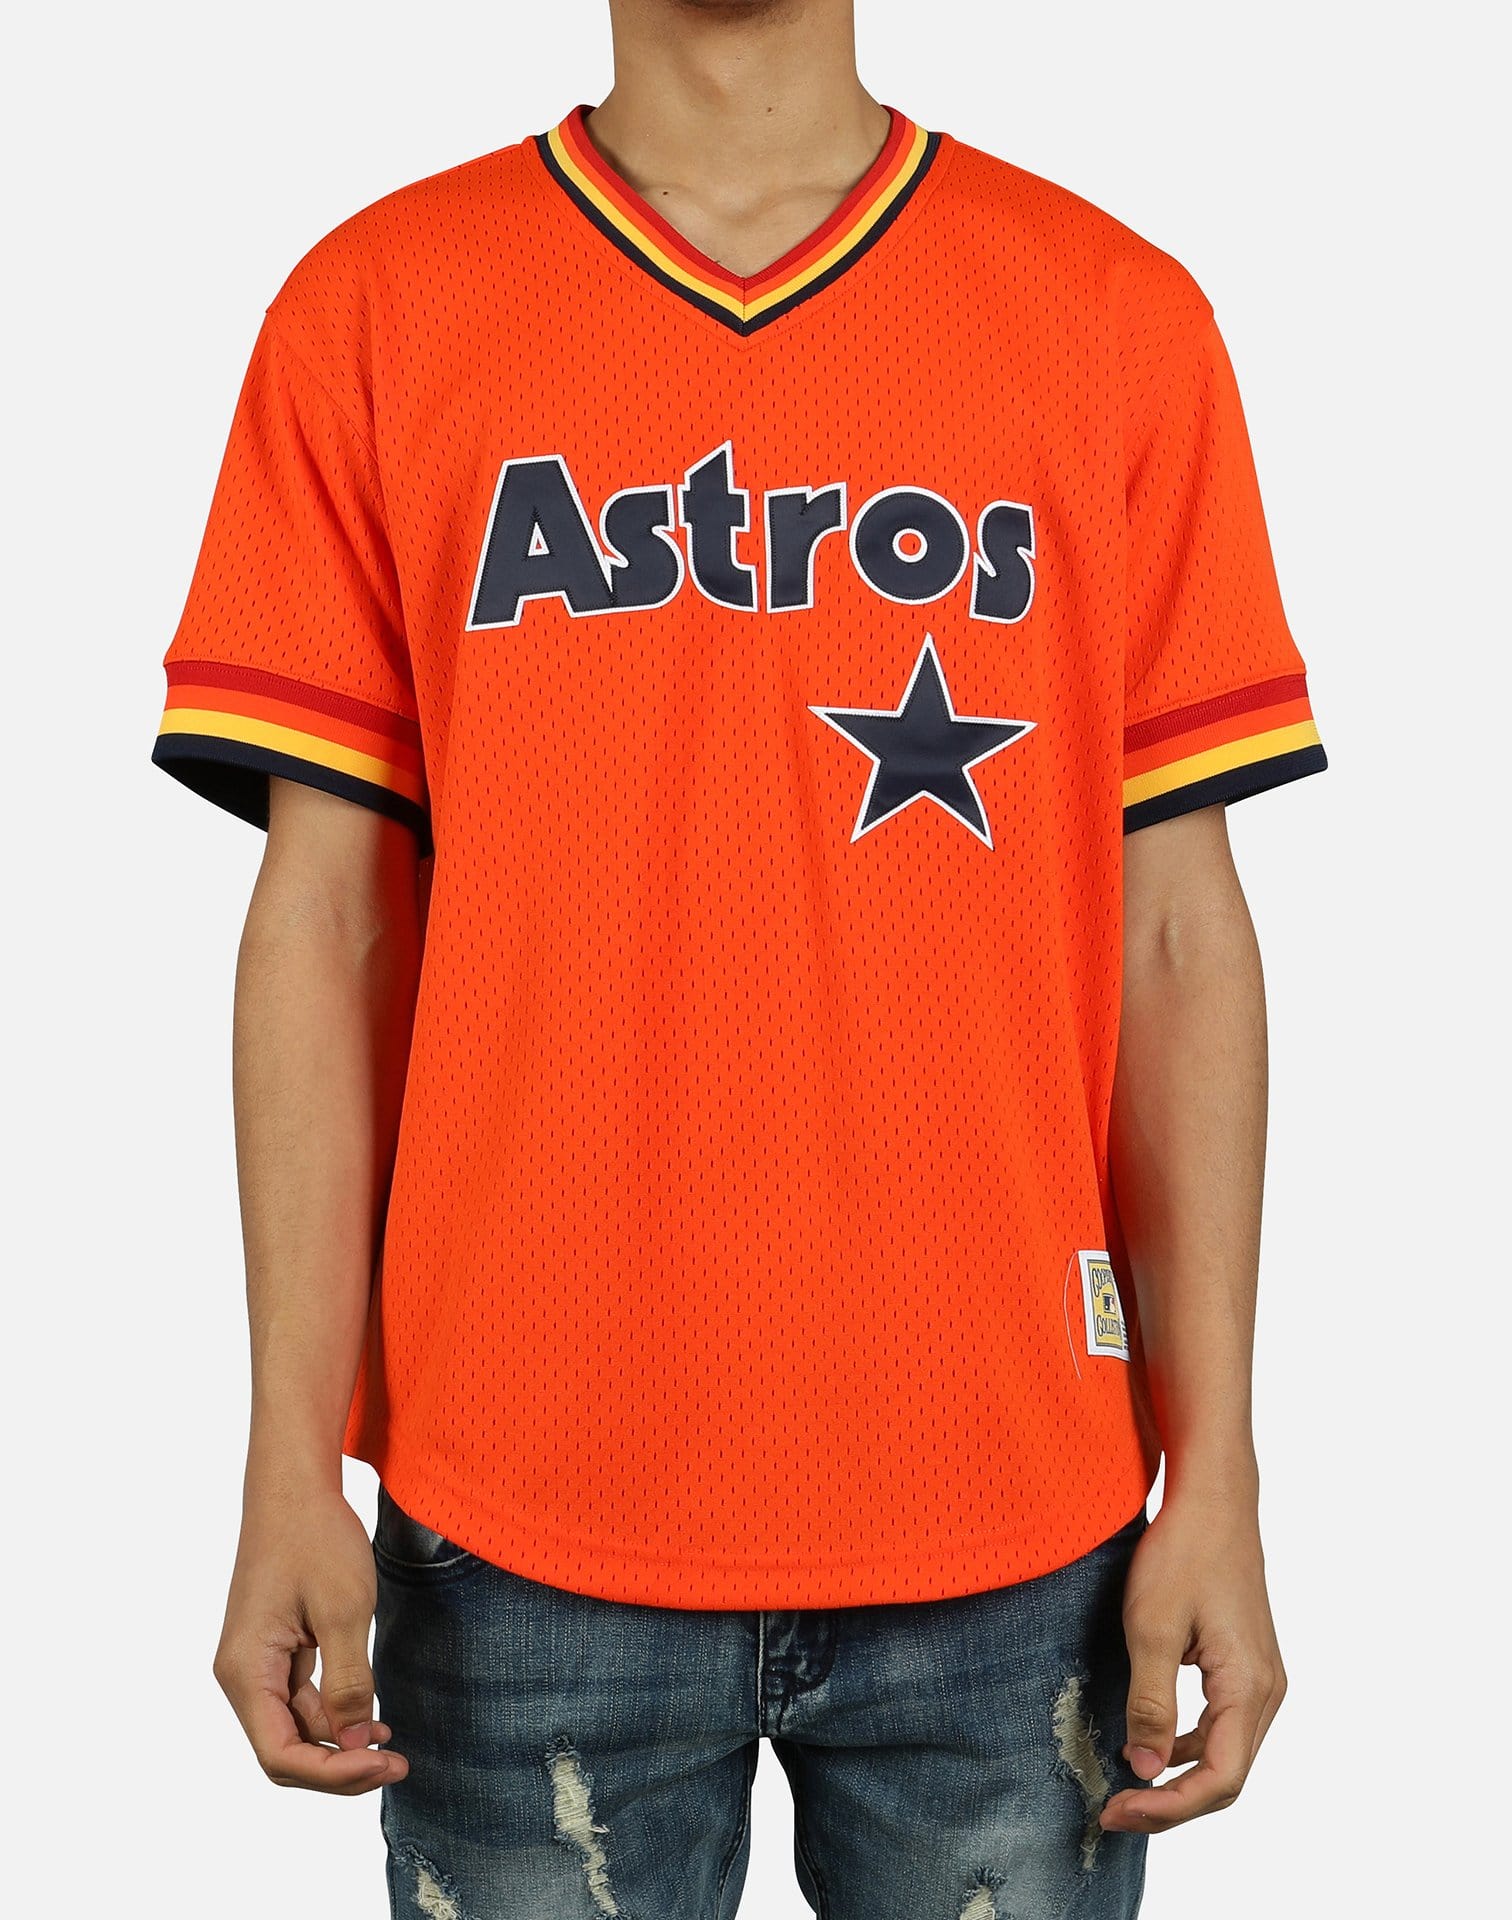 astro orange jersey